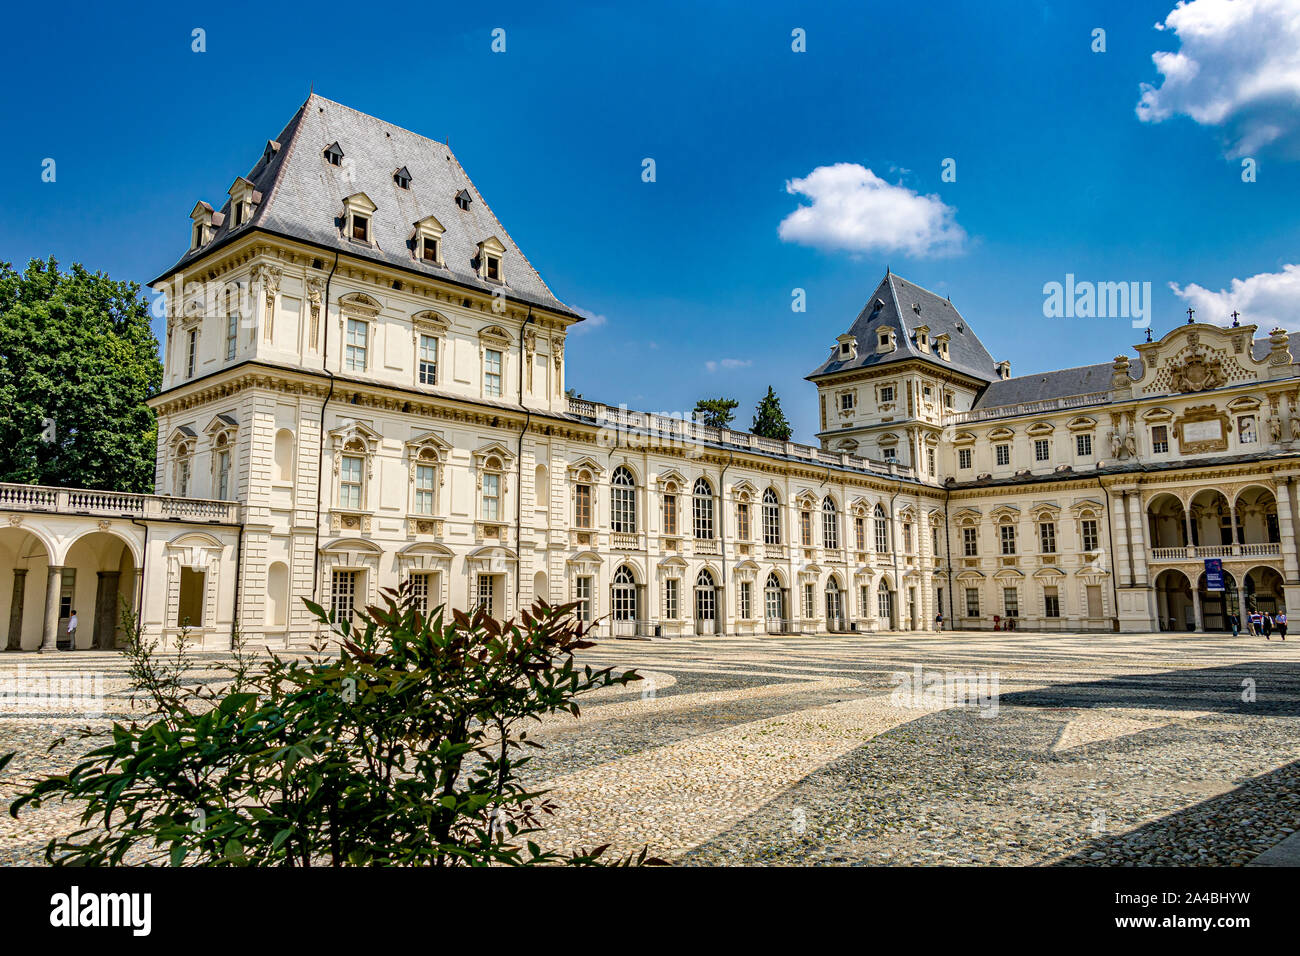 Il francese ha ispirato la facciata del castello di Castello del Valentino un edificio storico situato nel Parco del Valentino , Torino, Italia Foto Stock